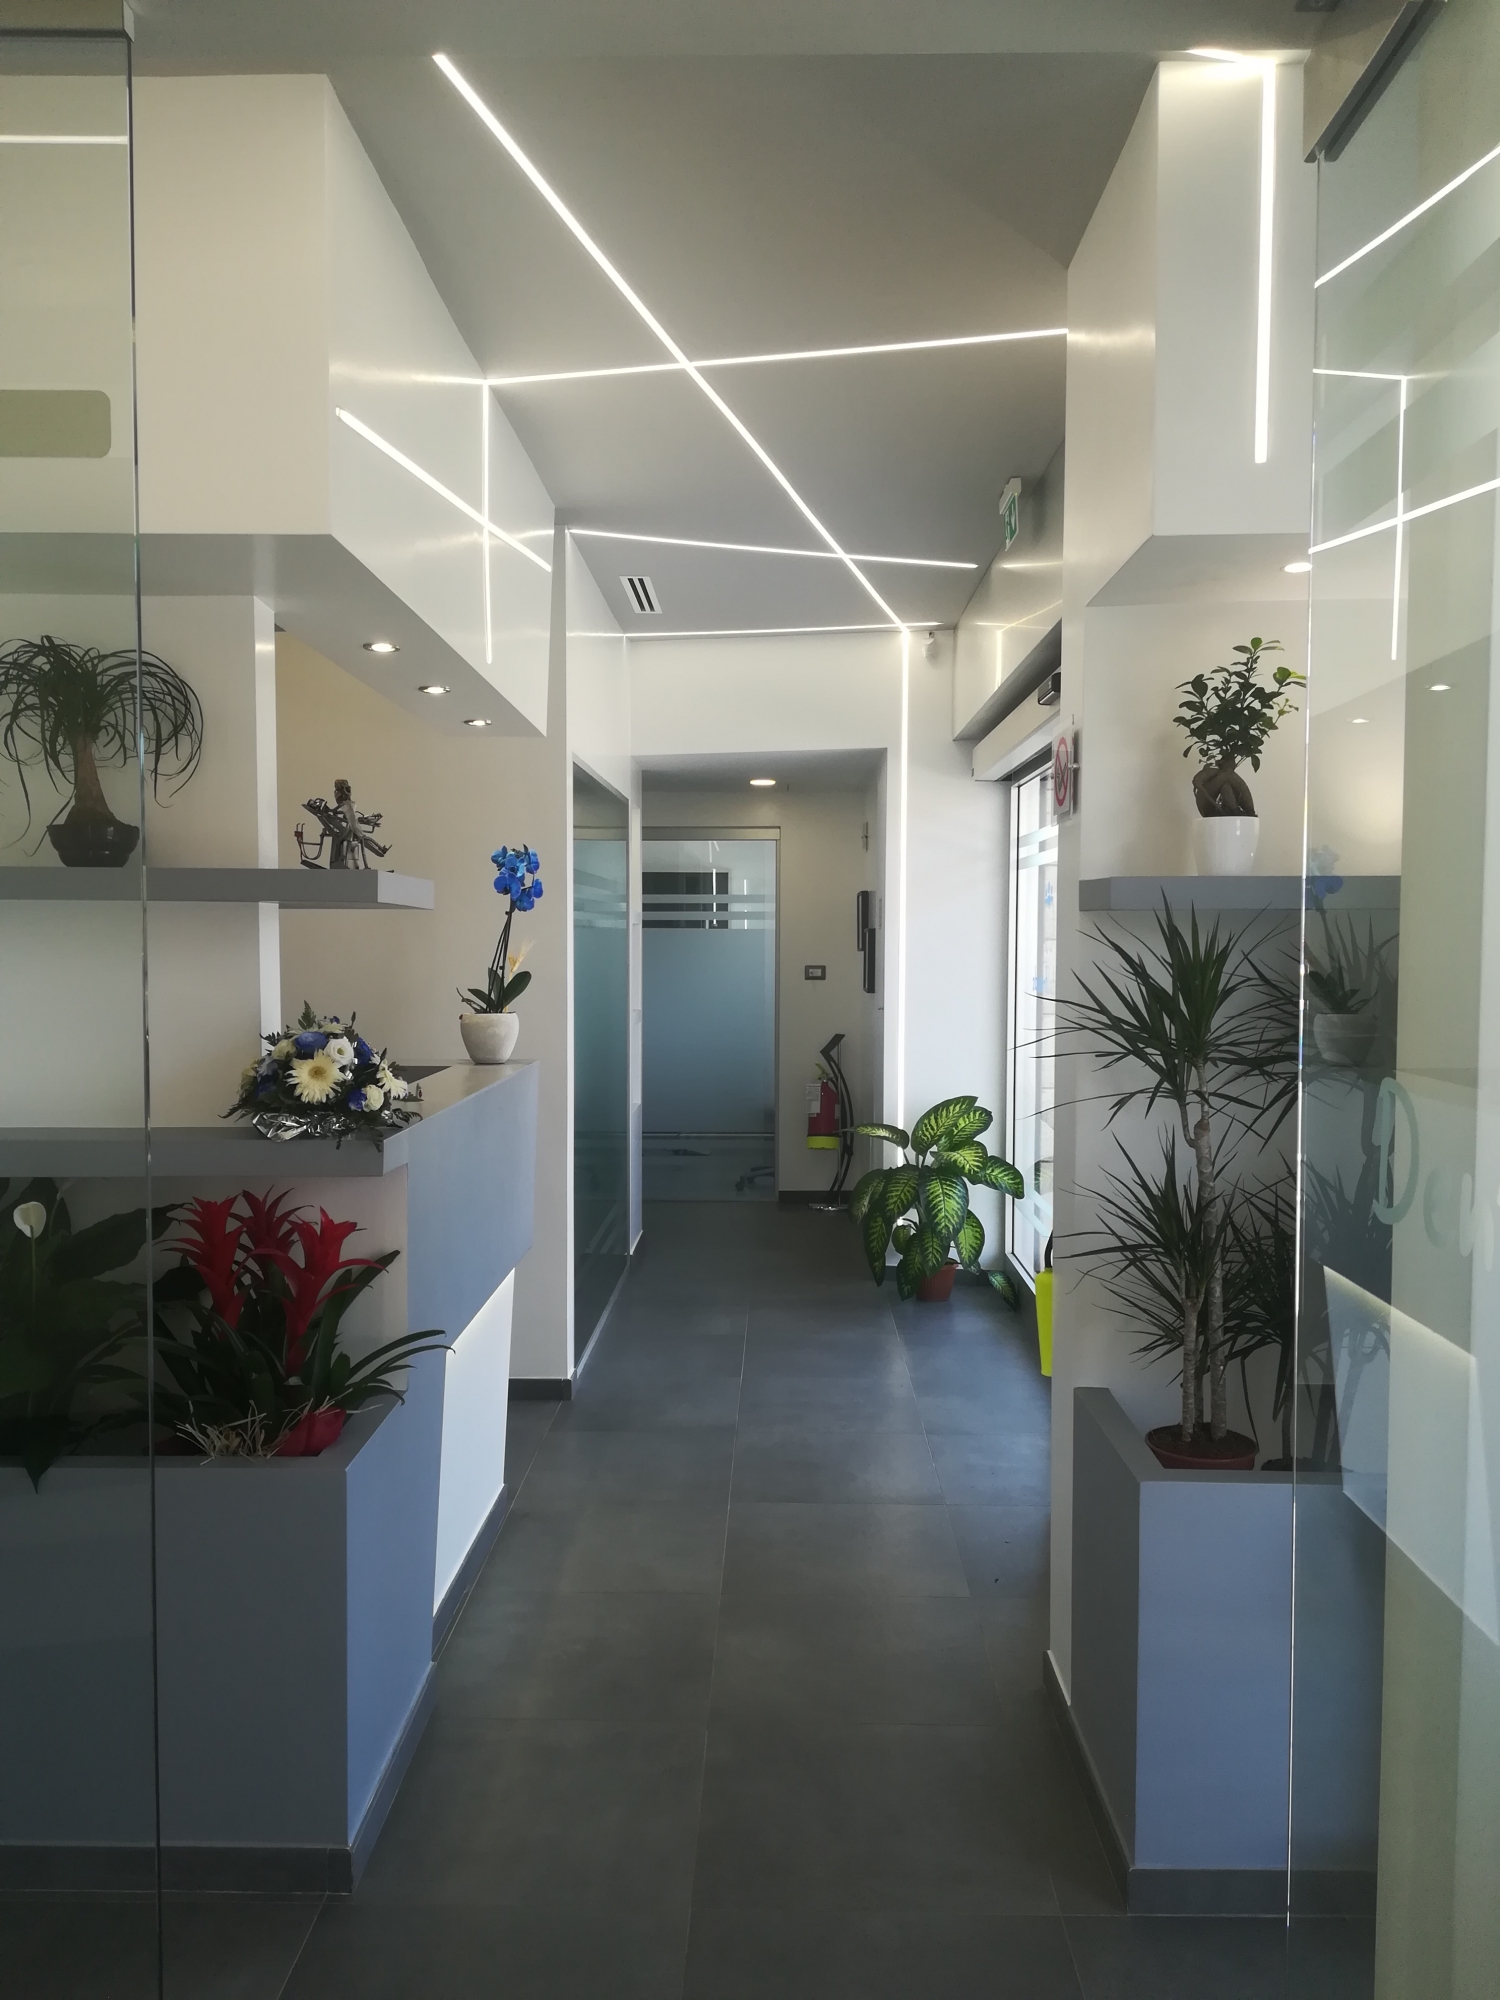 Ingresso Reception - studio odontoiatrico progetto - Architetto - Led - soffitto in cartongesso